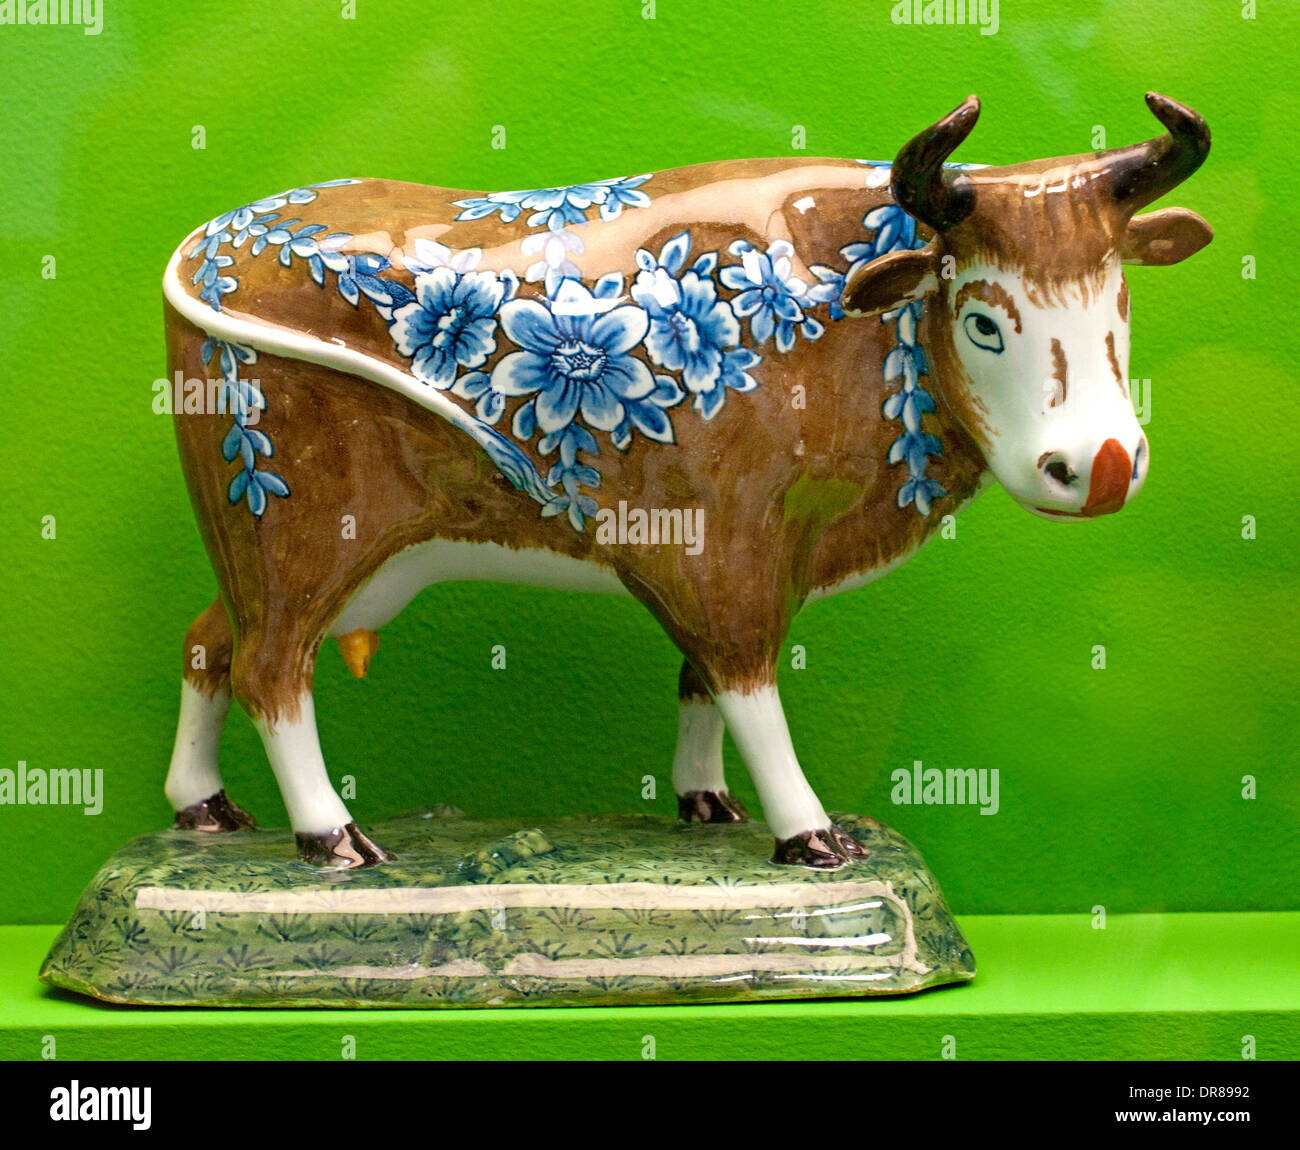 Mucca mucche Delft Delft 17 - 18 secolo animali delftware porcellana olandese Paesi Bassi Foto Stock